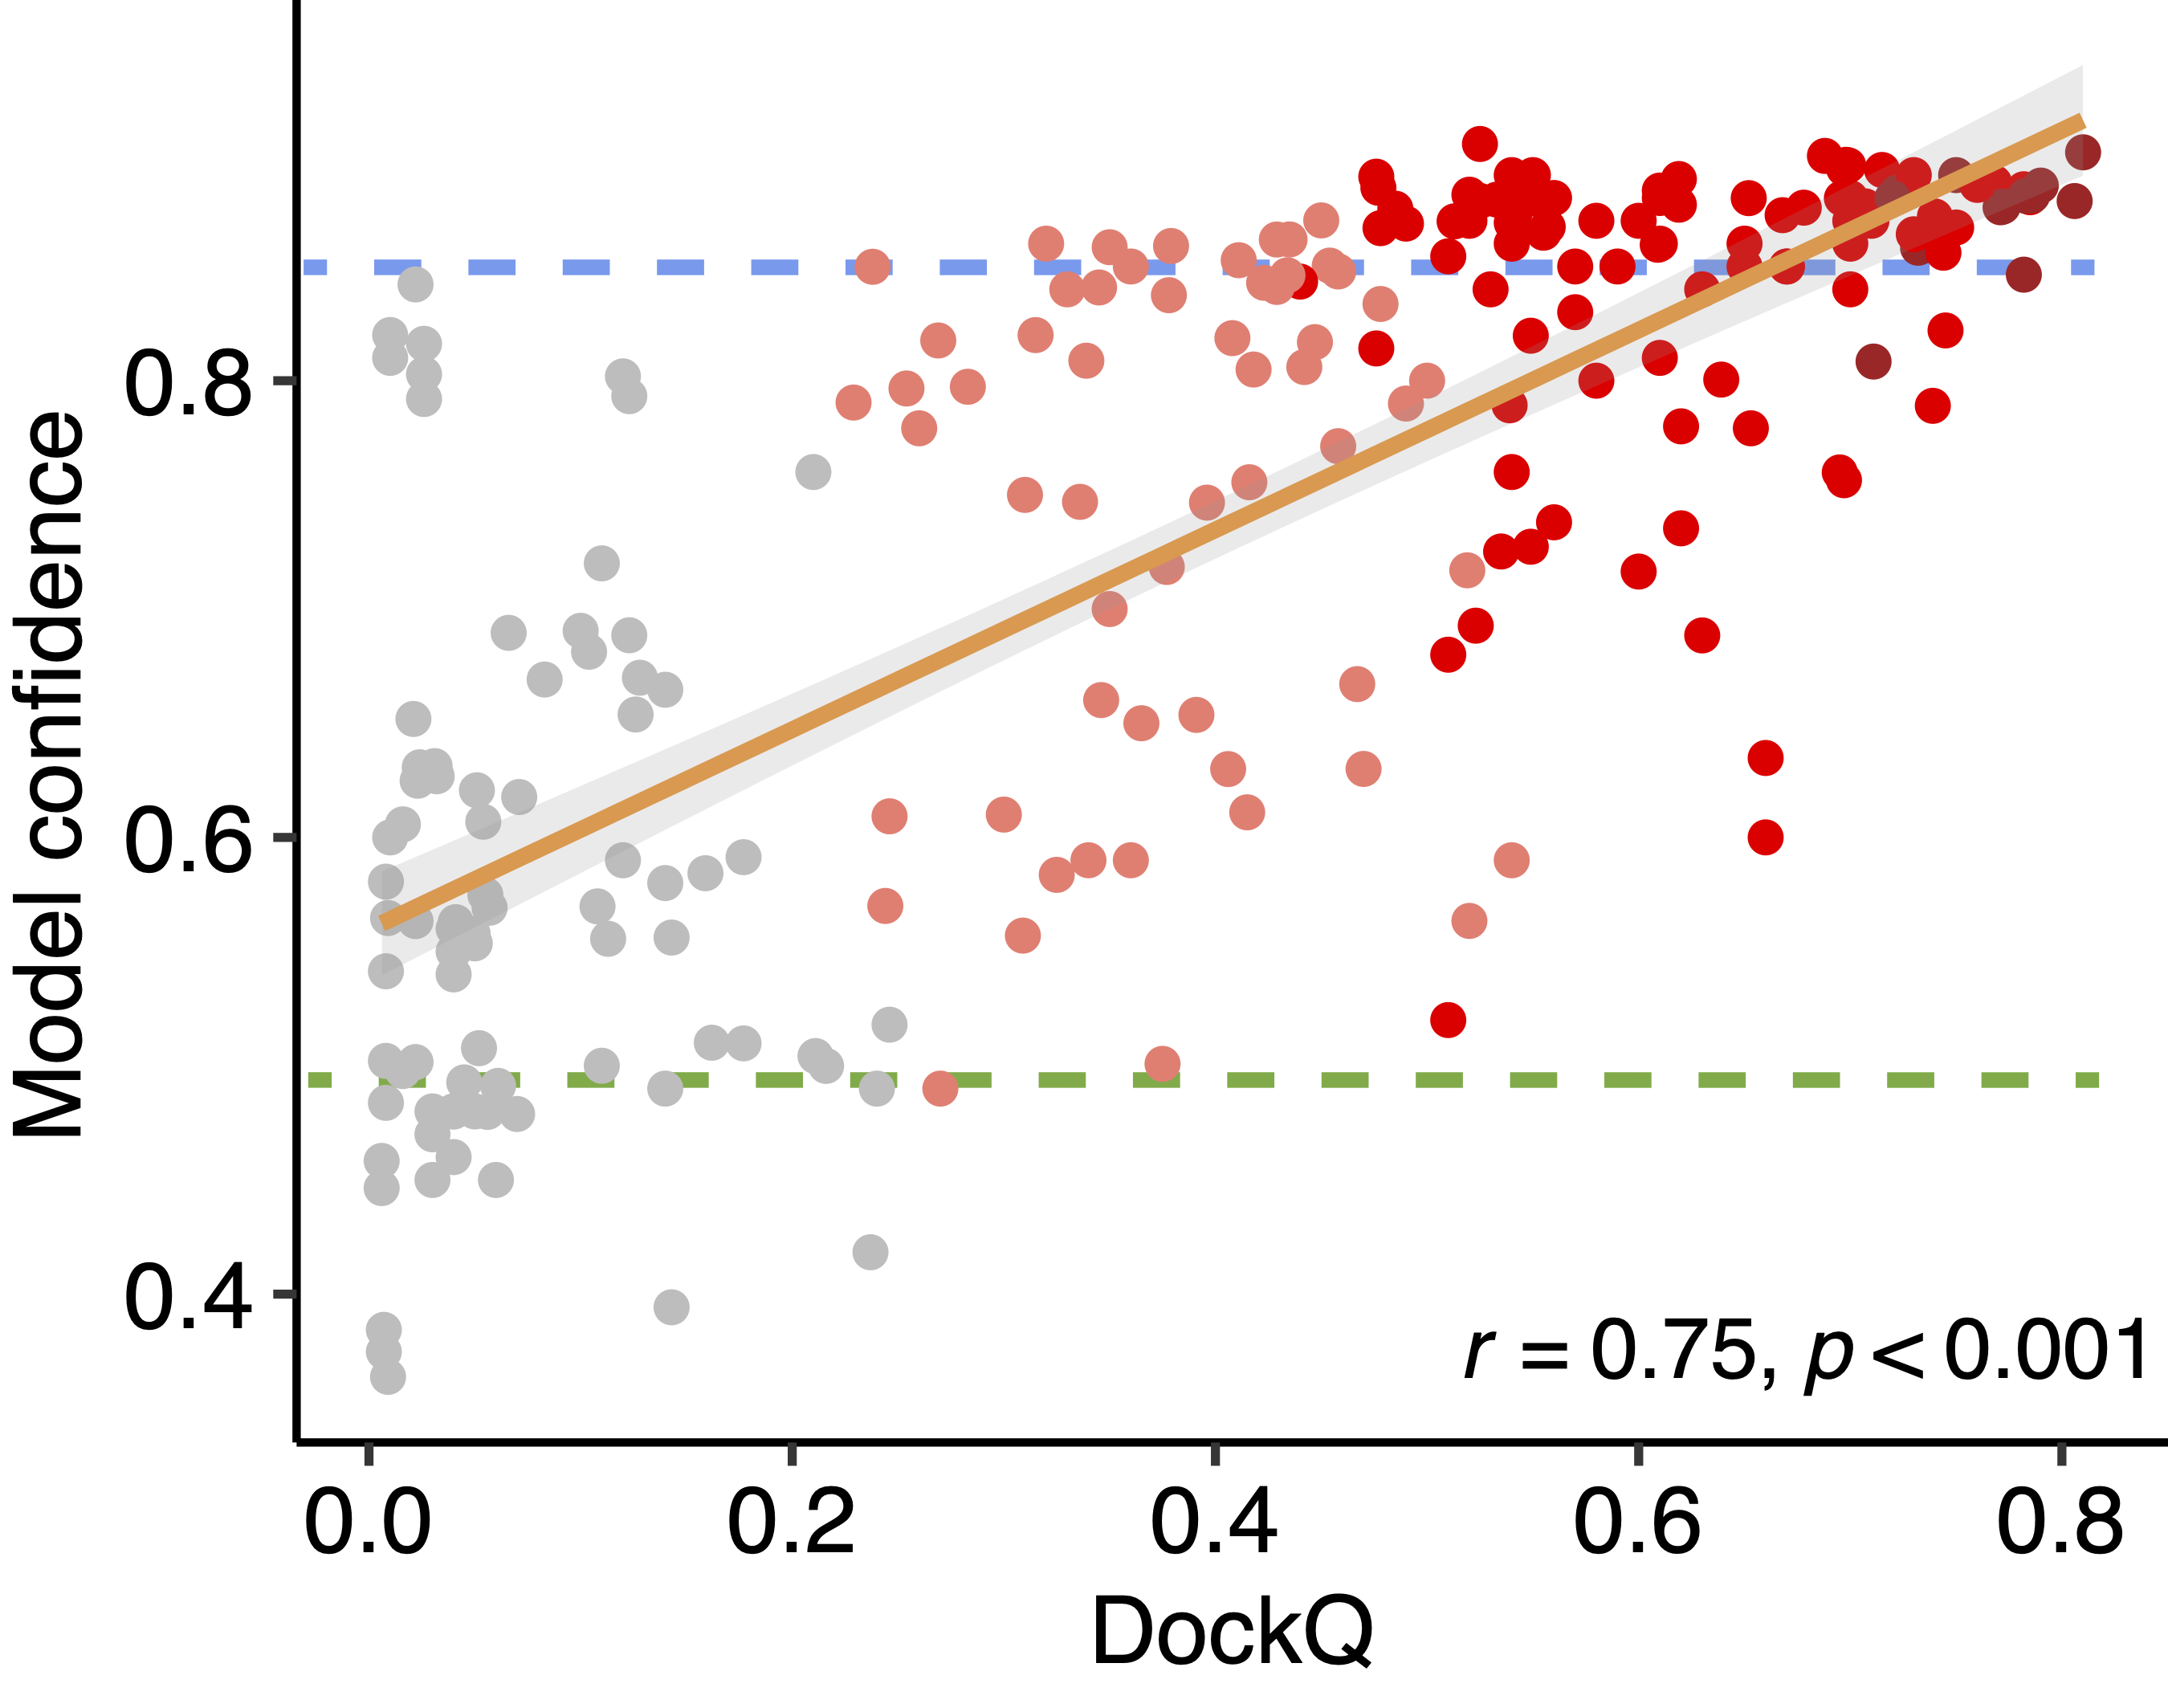 plot of model confidence vs. dockq